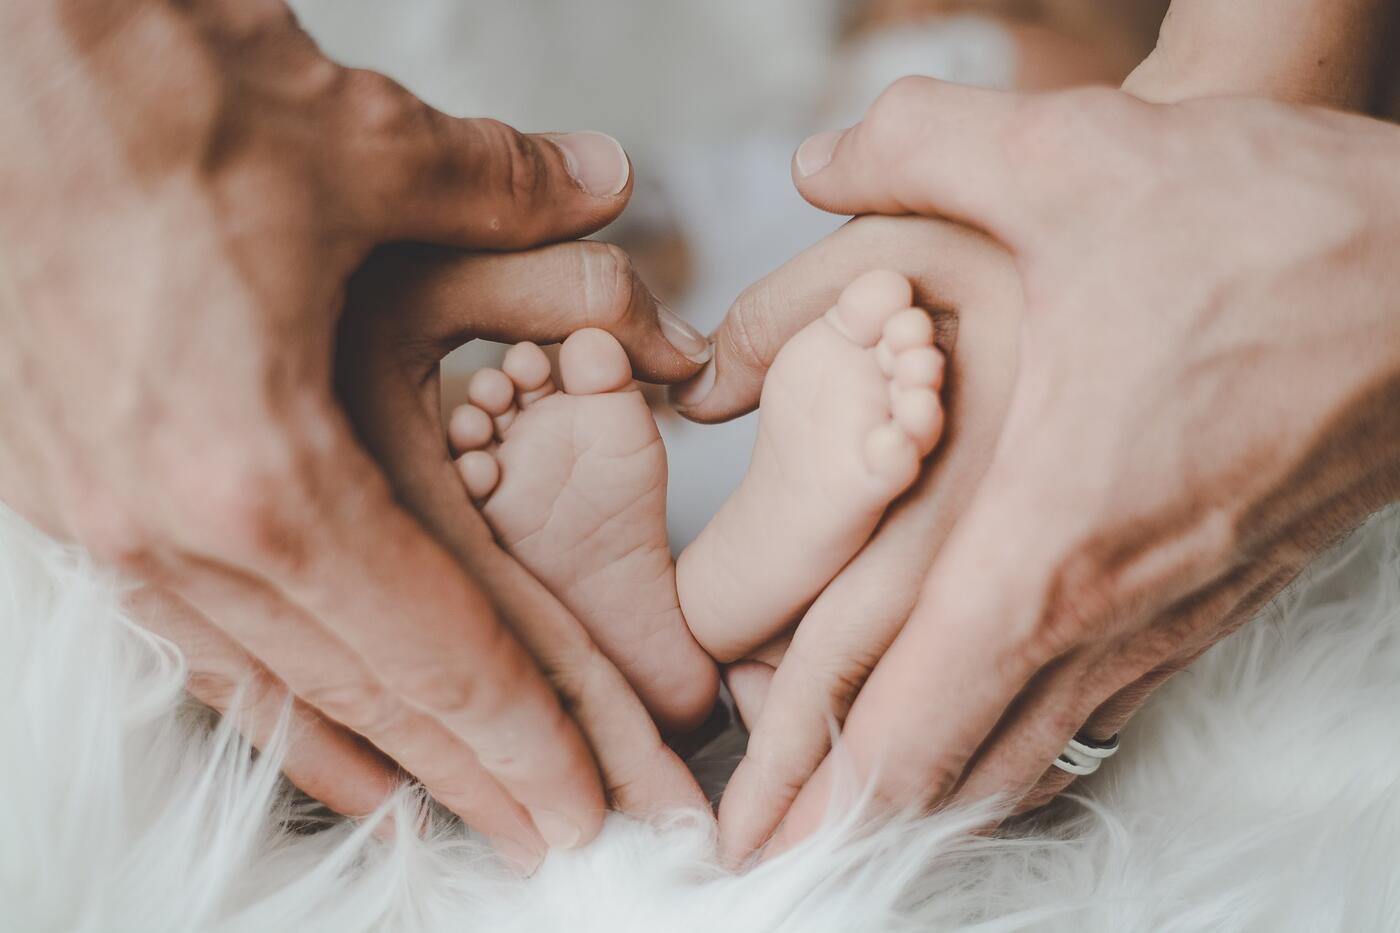 Füße eines Neugeborenen und Hände von Erwachsenen